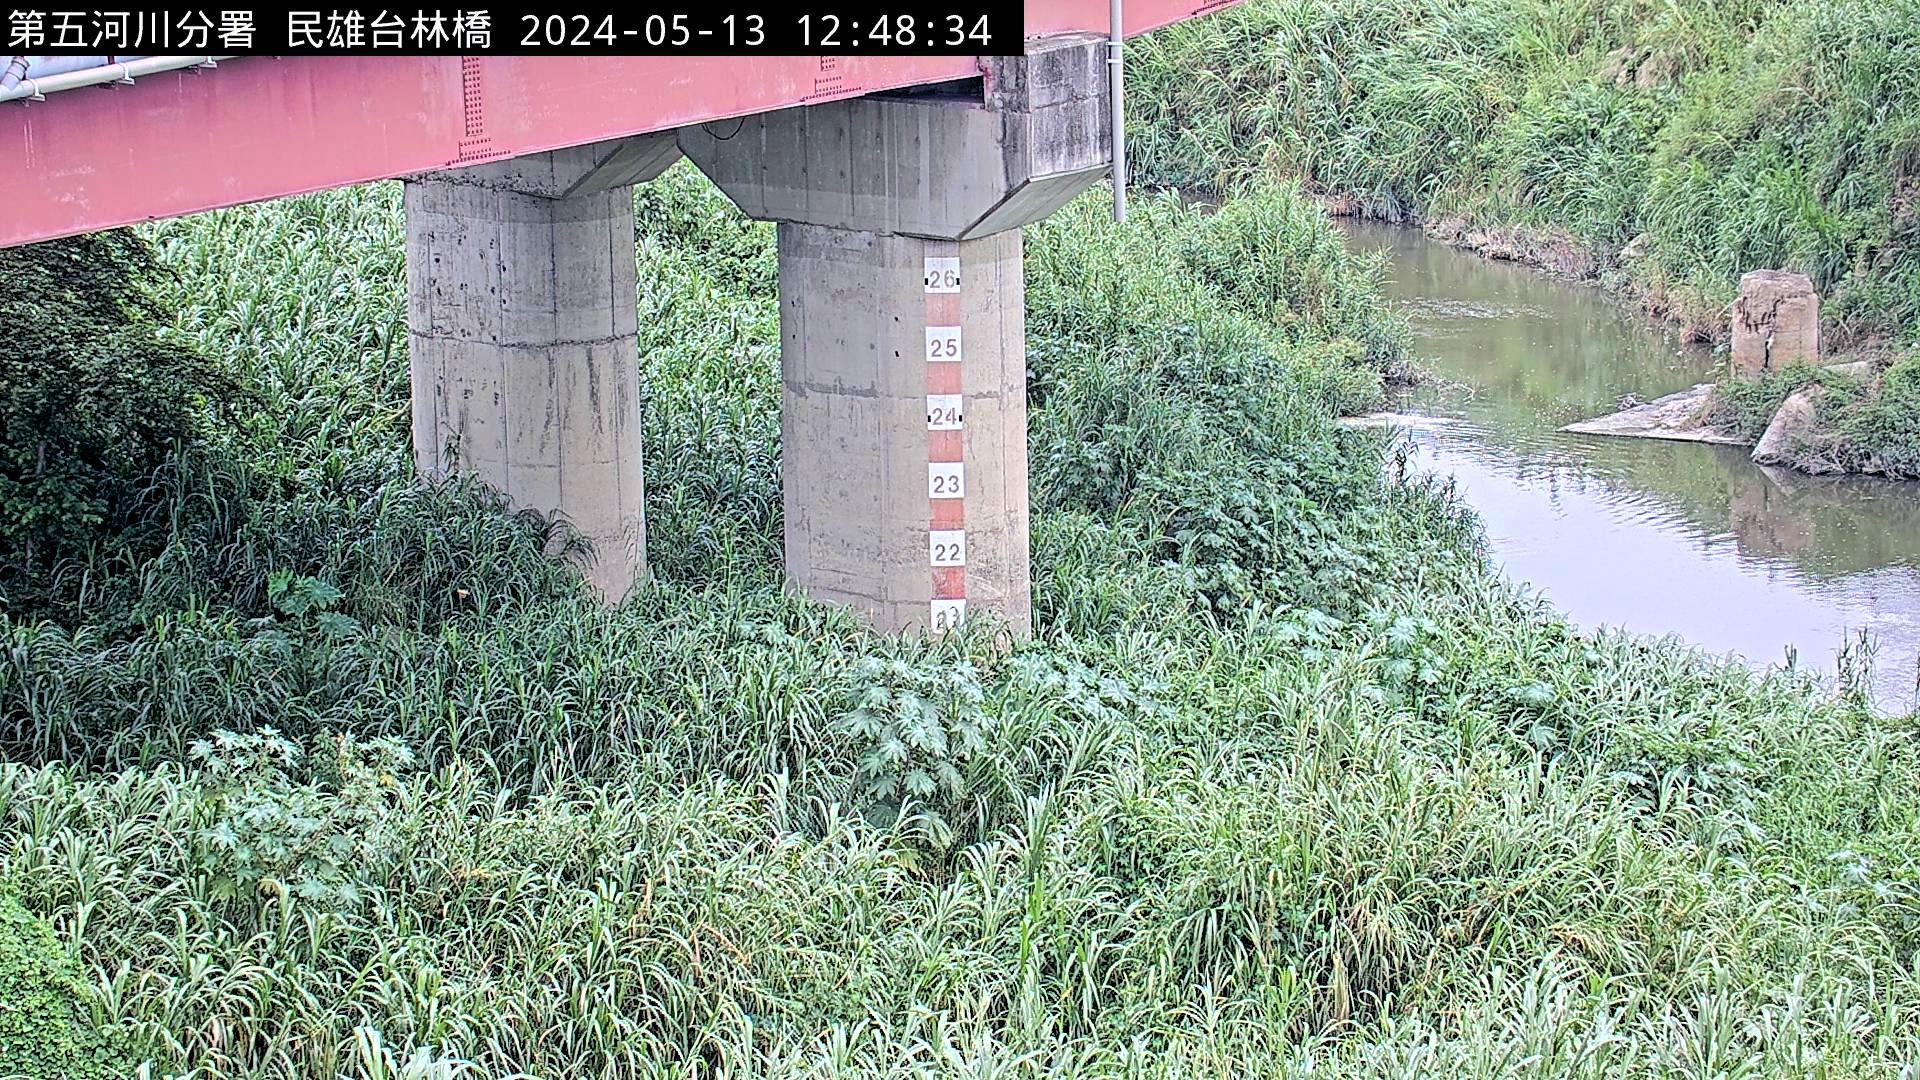 水利署水資源  防災中心 台林橋(固定鏡頭) 距離1.9公里 氣溫23.4度